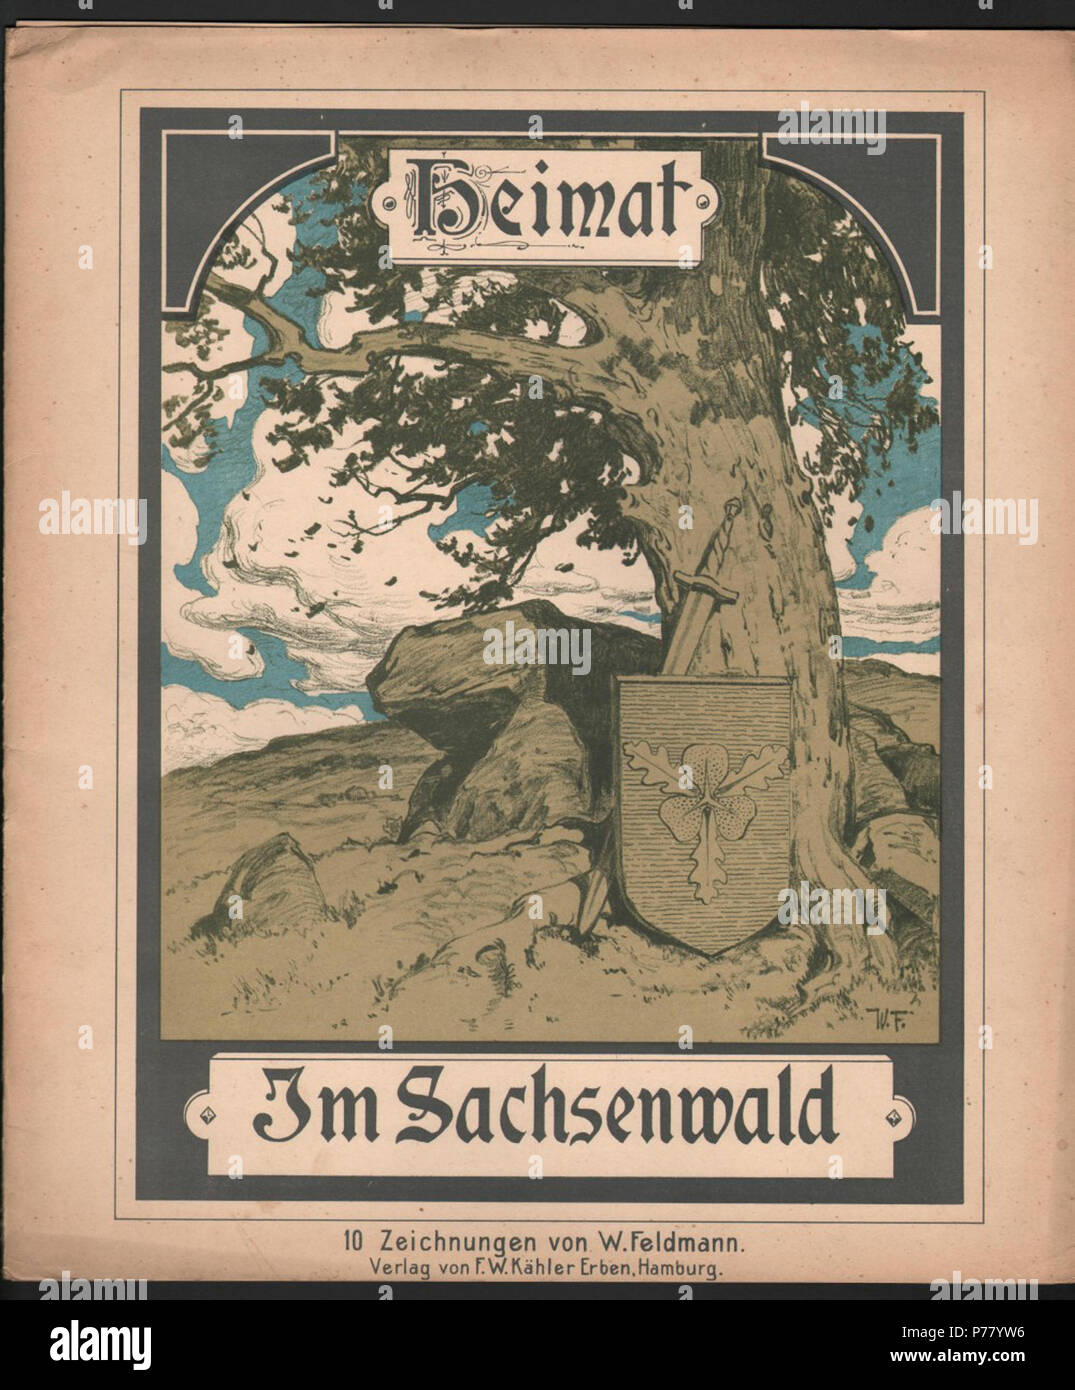 Heimat. Im Sachsenwald. Verlag von F. W. Kähler Erben, Hamburg . Unknown  date 69 Wilhelm Feldmann - Im Sachsenwald00 Stock Photo - Alamy